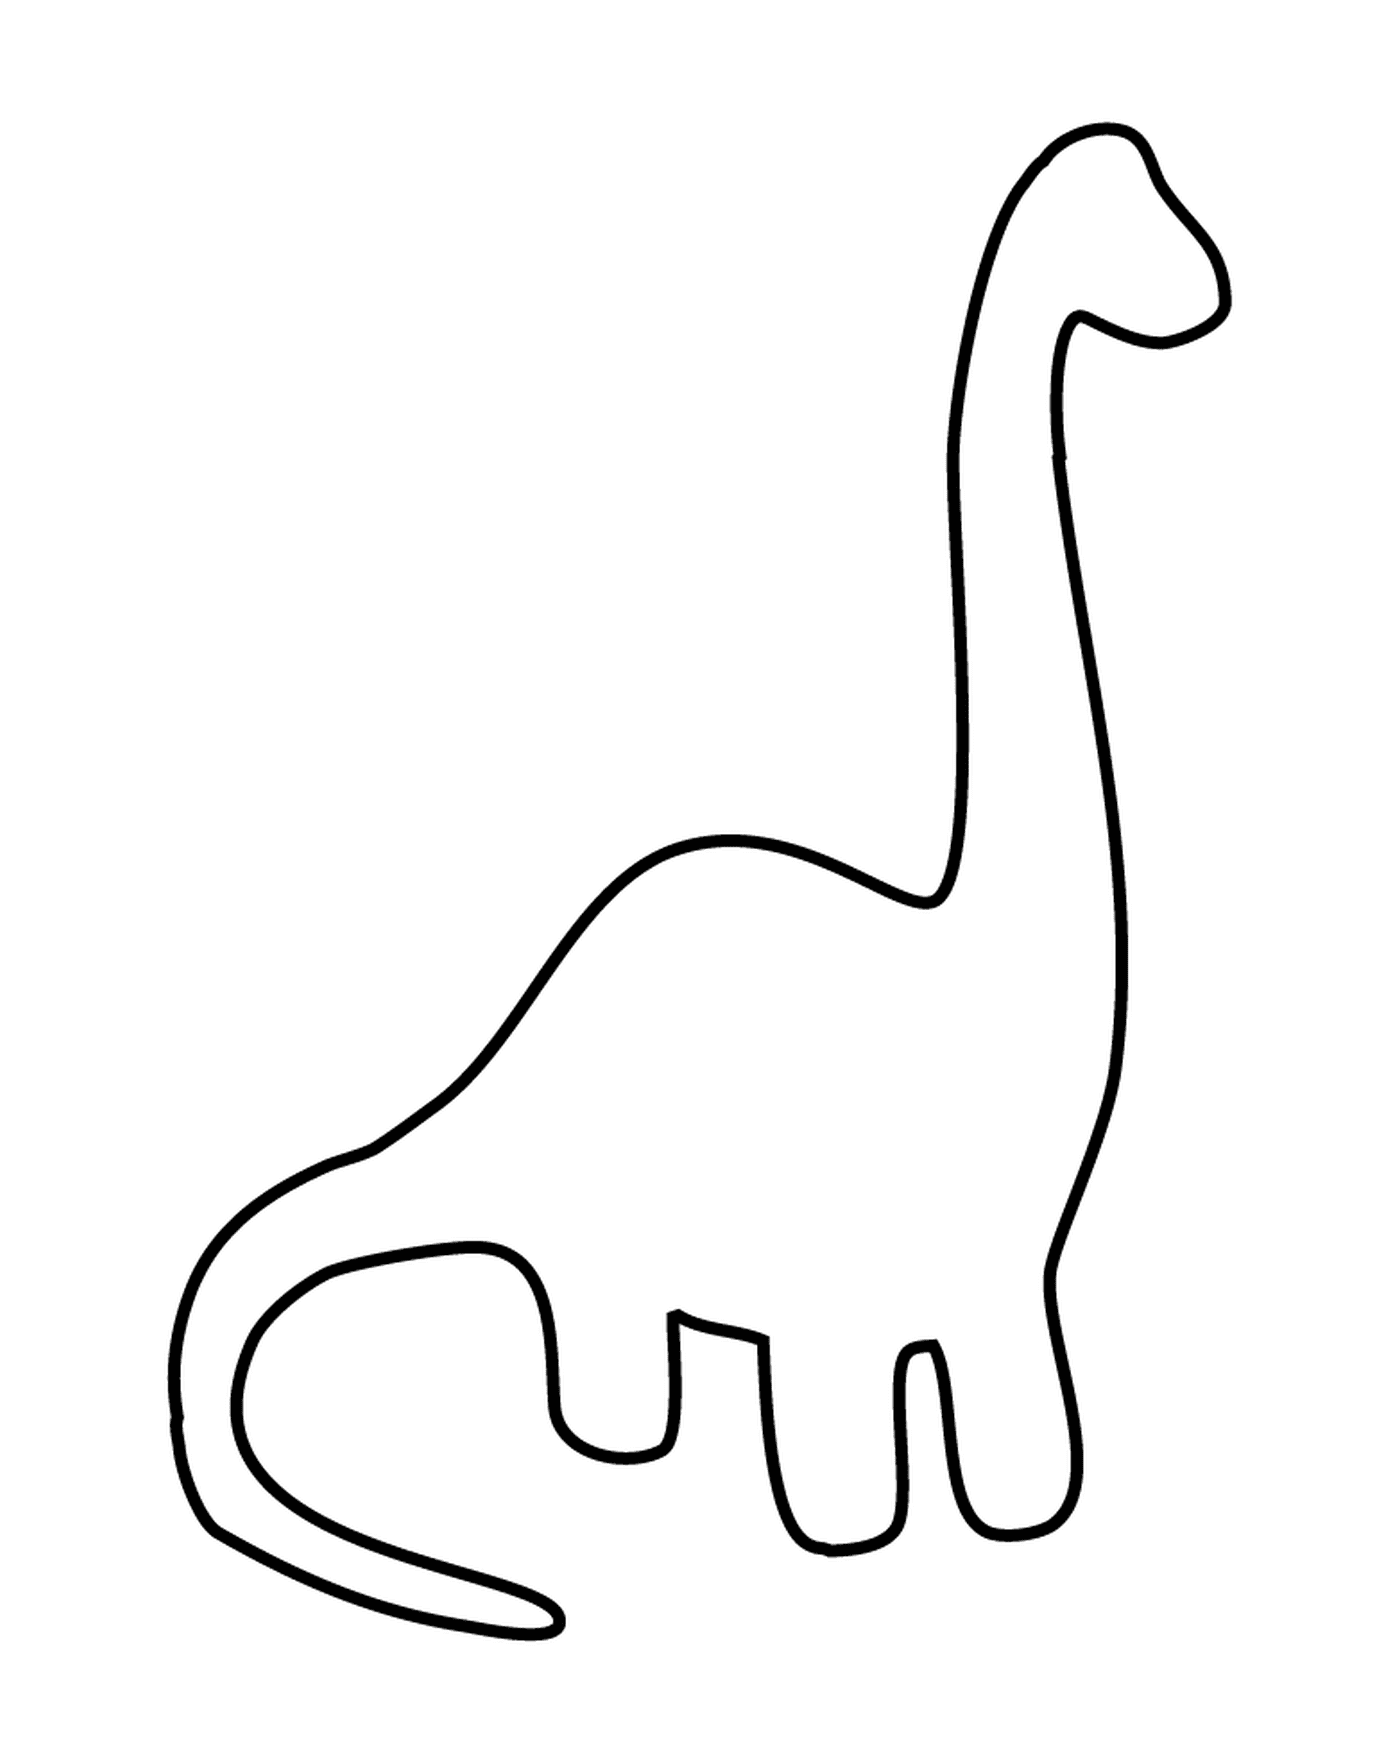  Um contorno de dinossauro preto e branco 